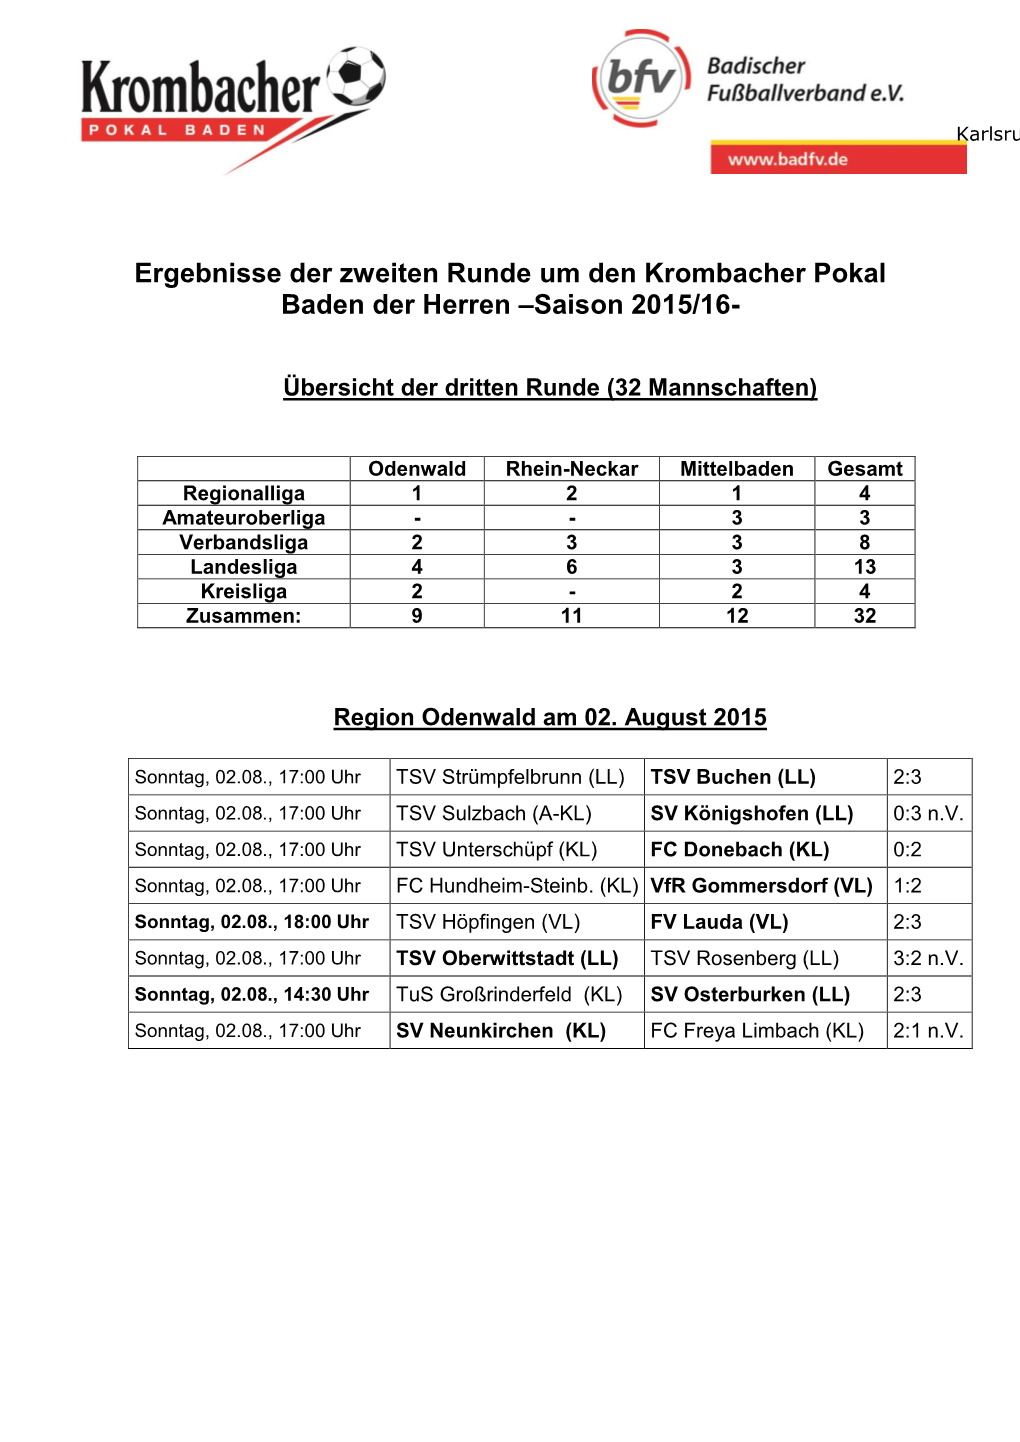 Ergebnisse Der Zweiten Runde Um Den Krombacher Pokal Baden Der Herren –Saison 2015/16